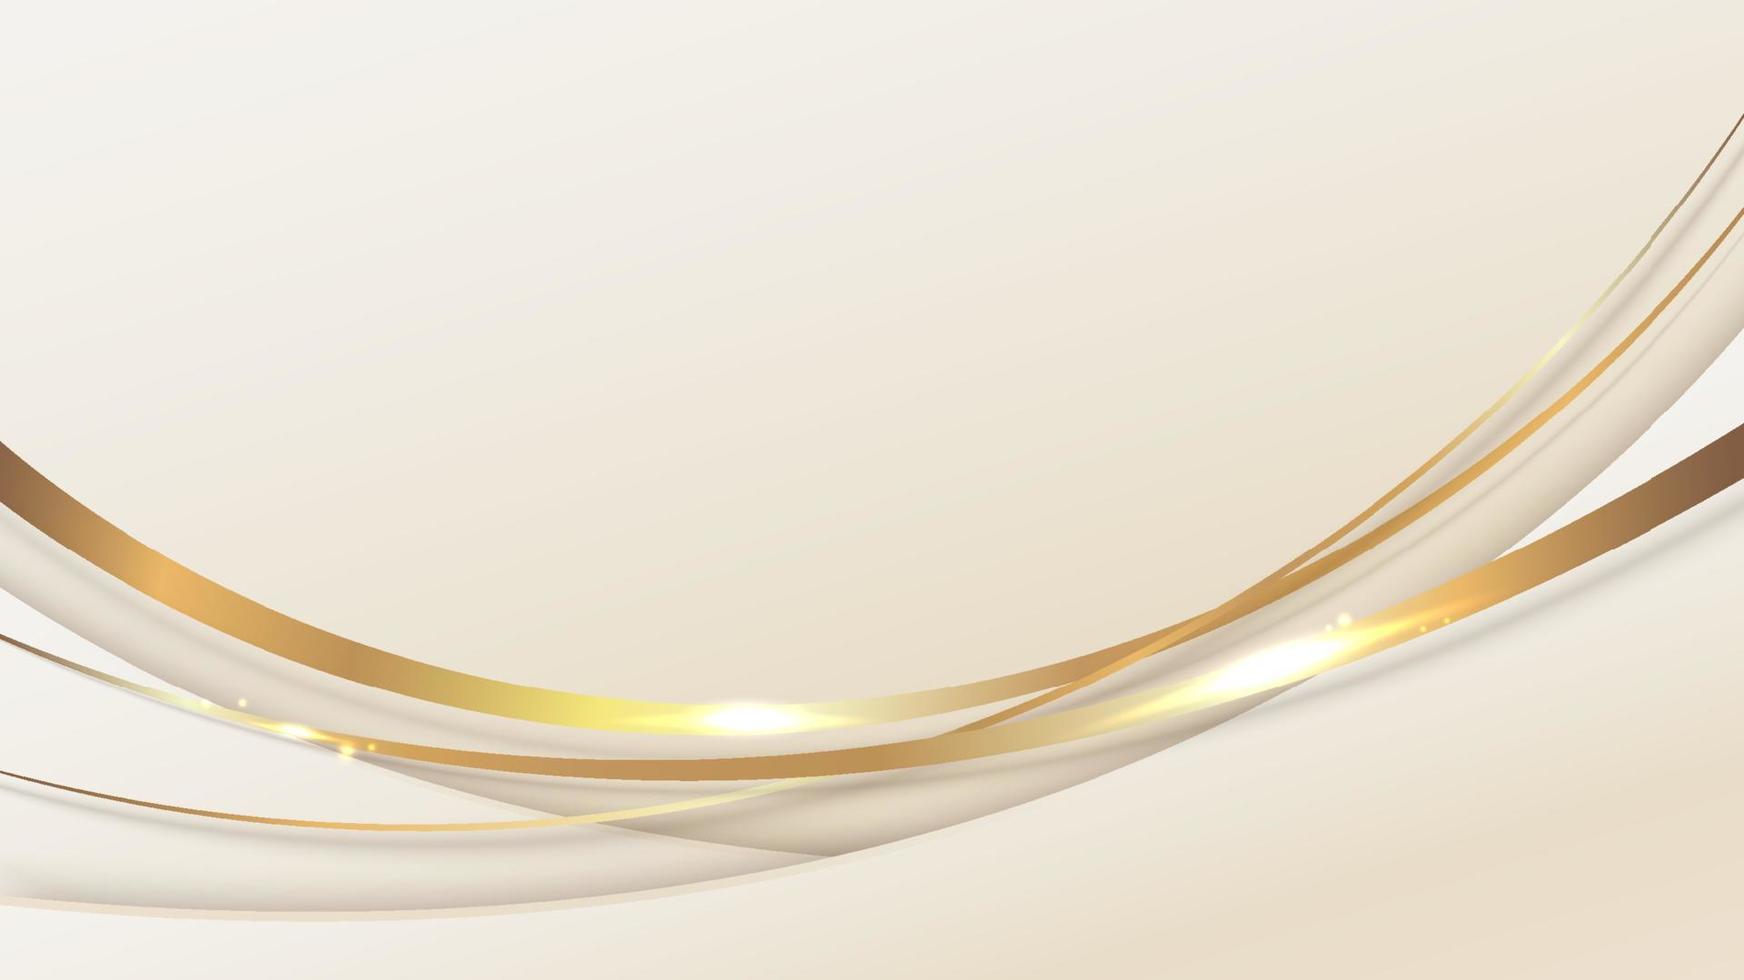 abstrakte Vorlage Hintergrund 3D elegante goldene geschwungene Form mit glänzender goldener Linie, funkelnder Beleuchtung und glitzerndem Luxusstil. vektor